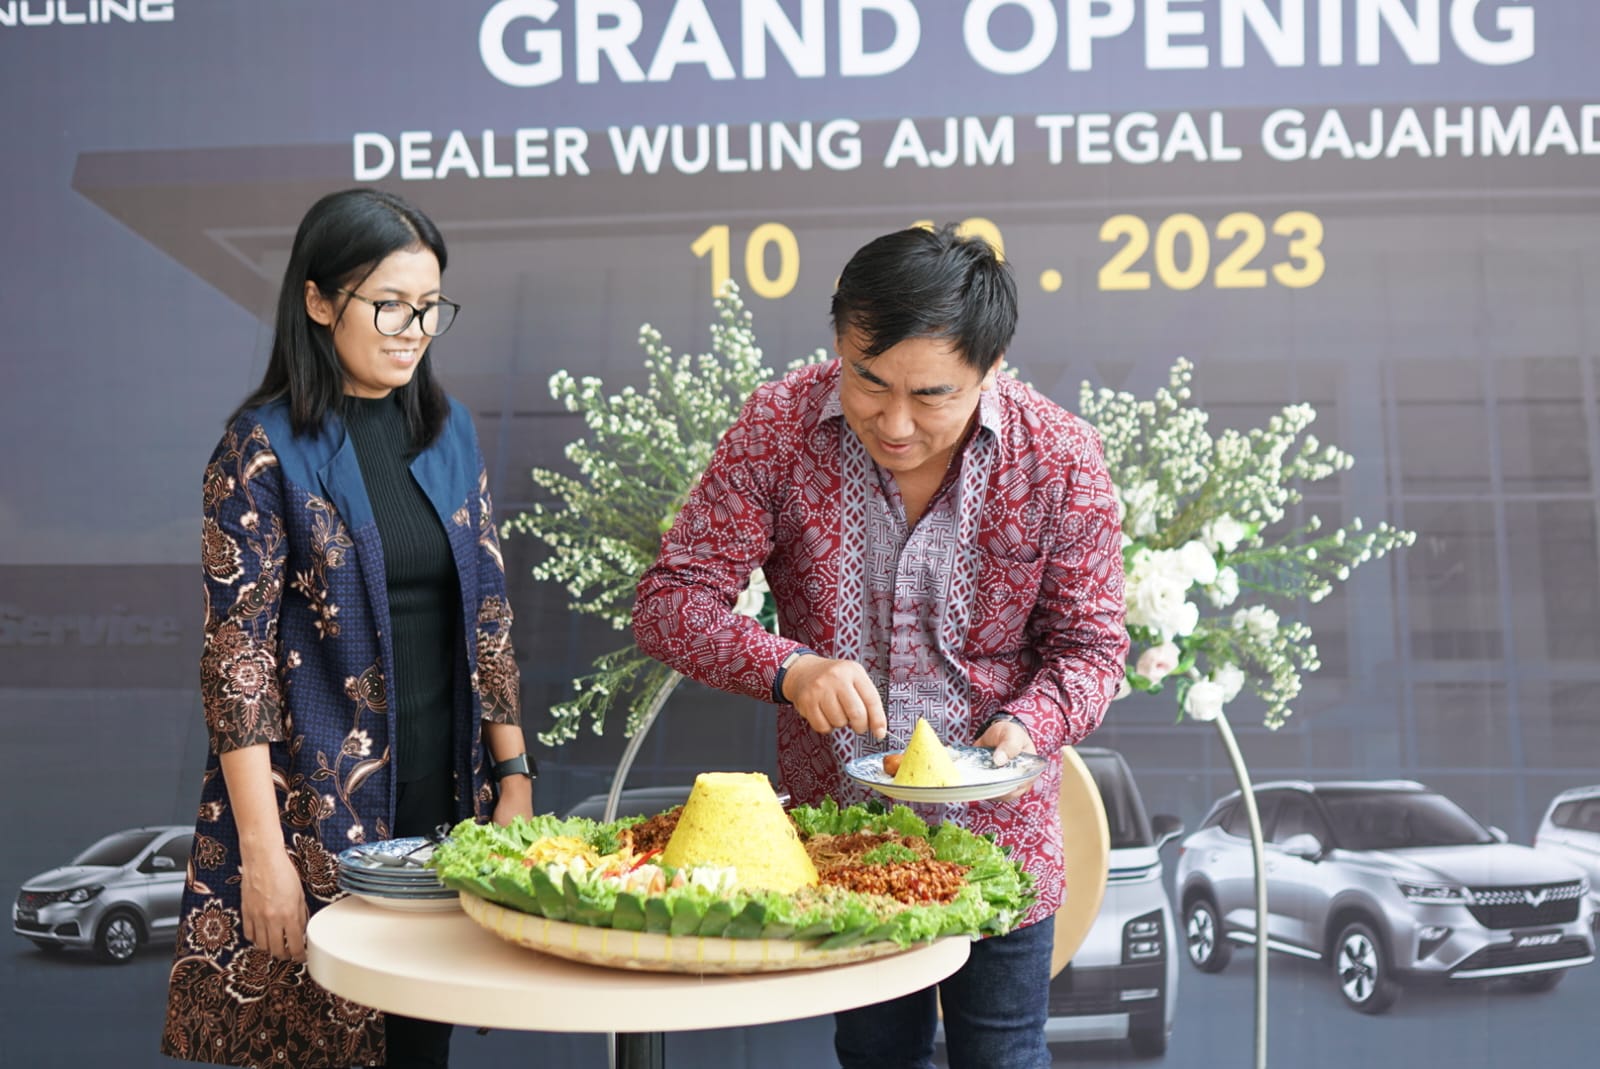   Dealer Wuling AJM Hadir di Kota Tegal, Selalu Berinovasi dan Berikan Pelayanan Terbaik dengan Konsep 3S  